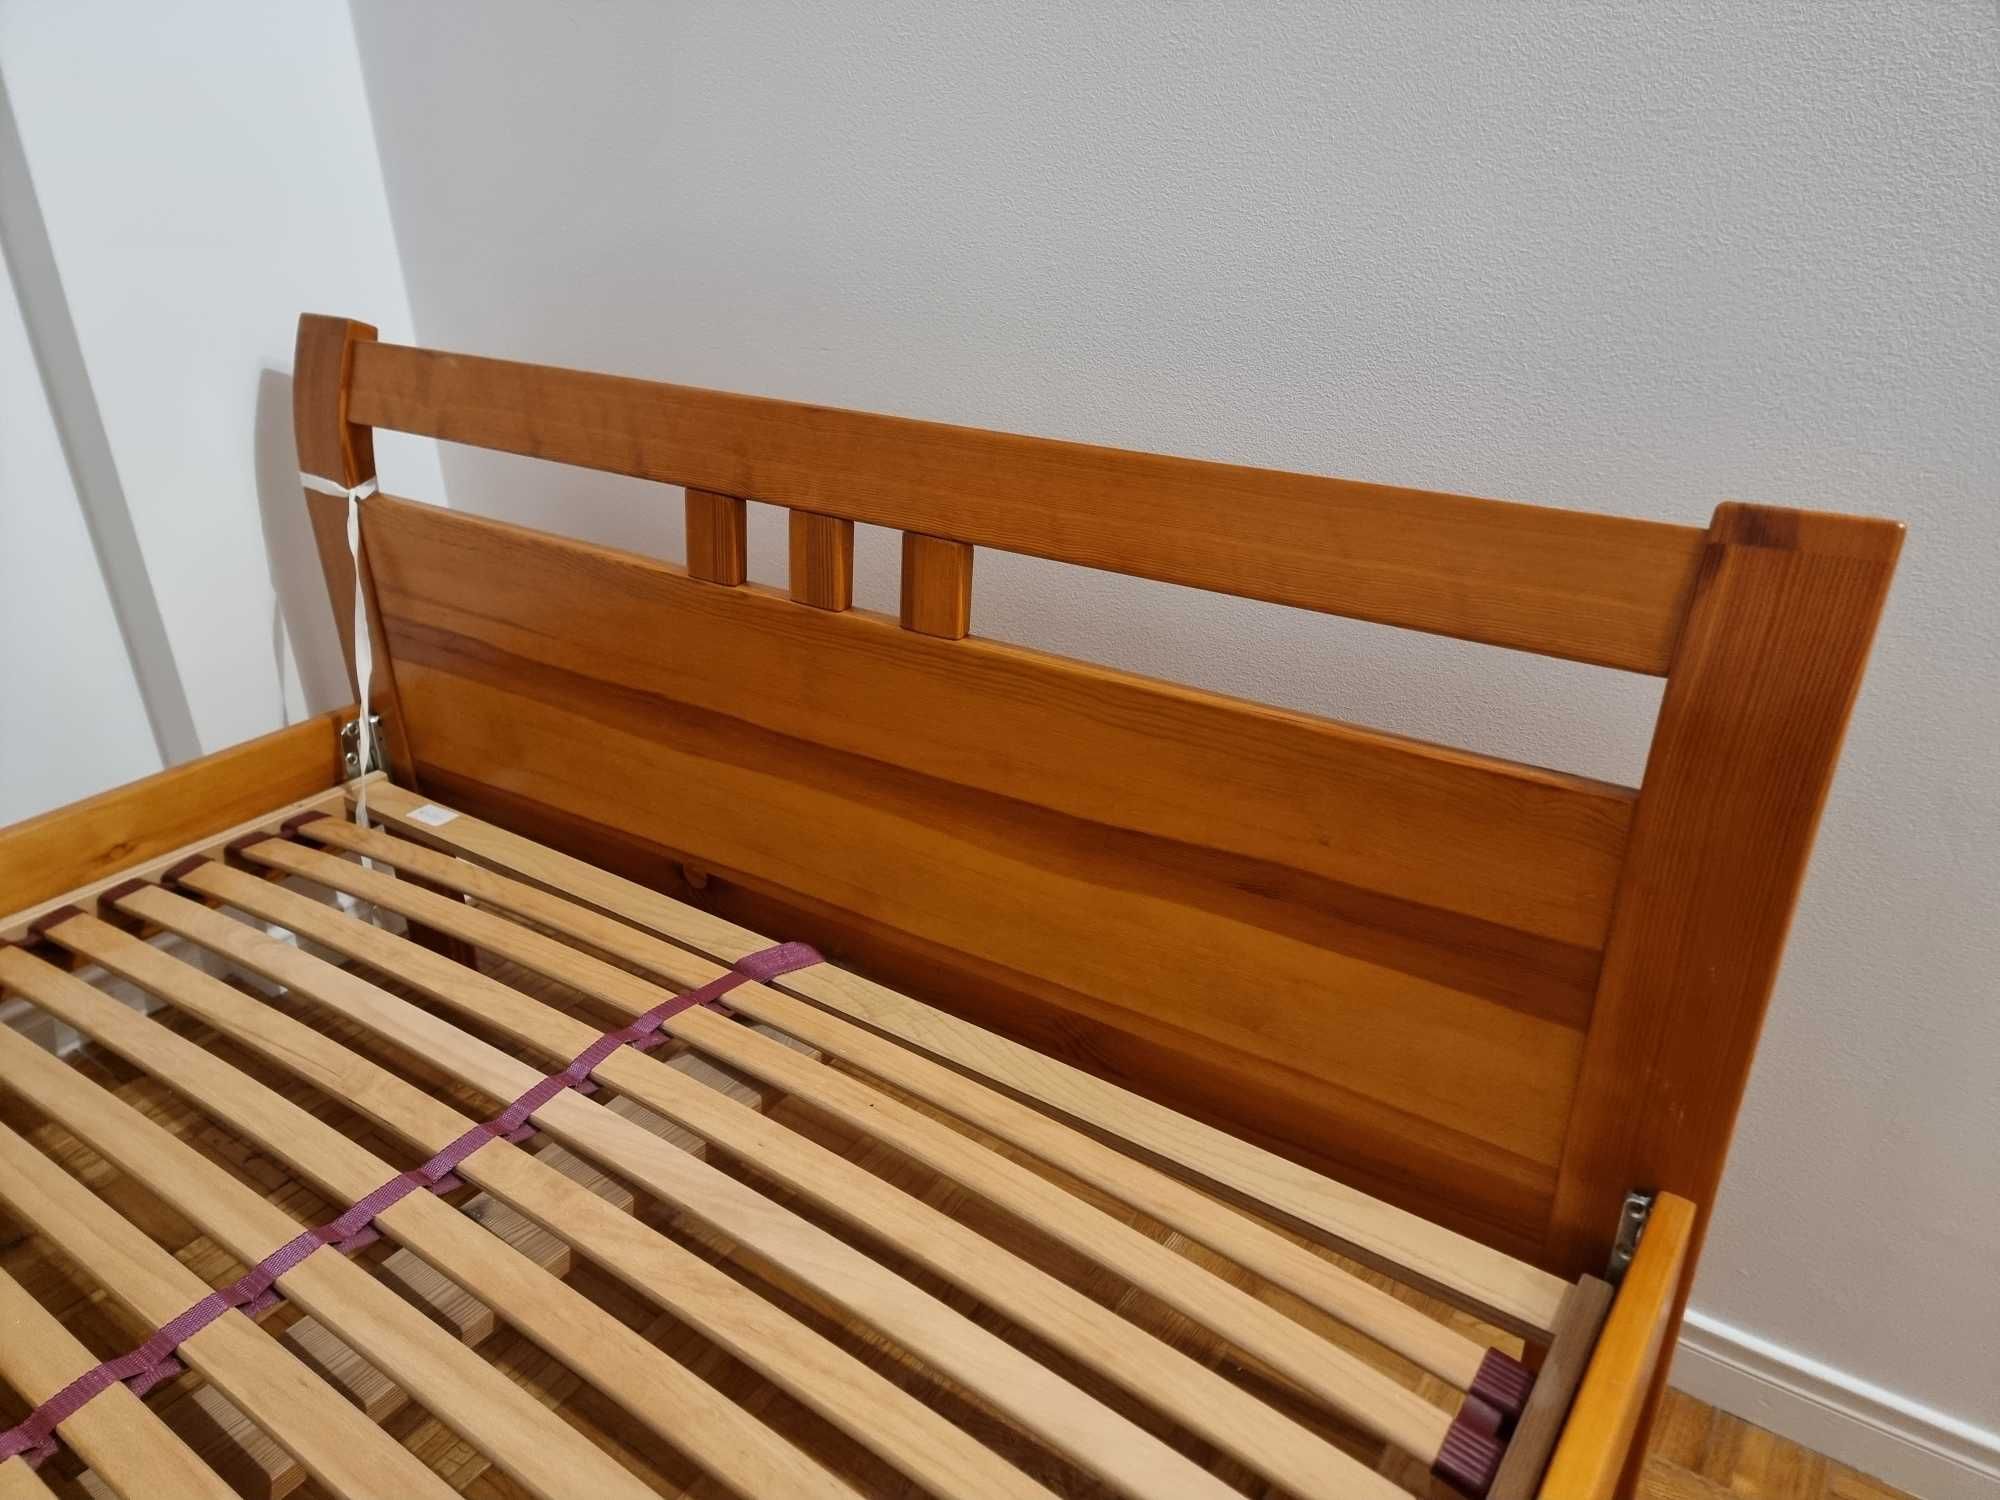 Łóżko z litego drewna 140x220 wysoka jakość praktycznie nowe